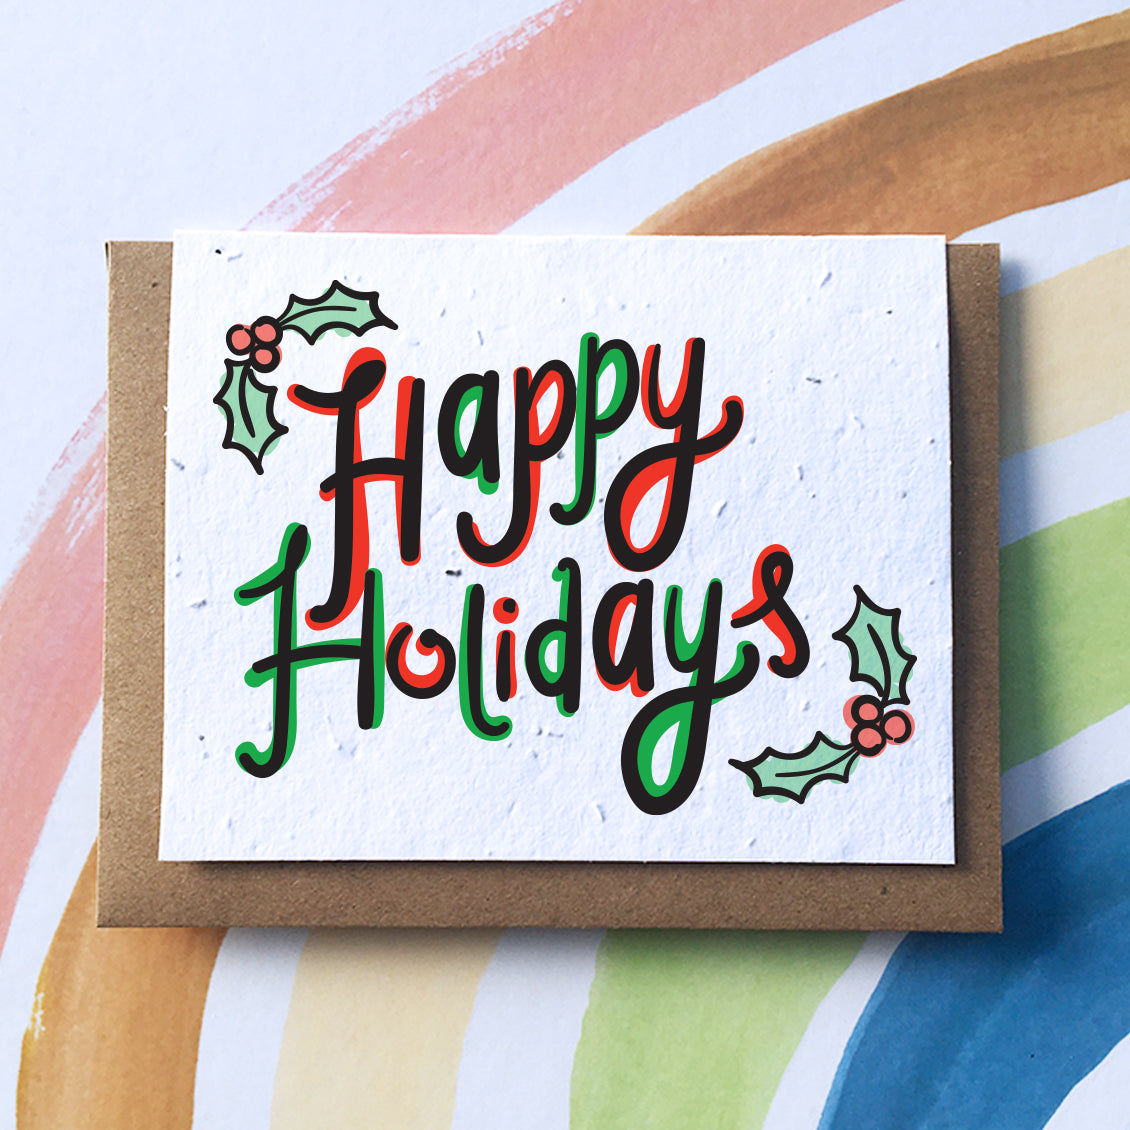 <img src="holidays.jpg" alt="Happy holidays Christmas sustainable zero waste greeting card">